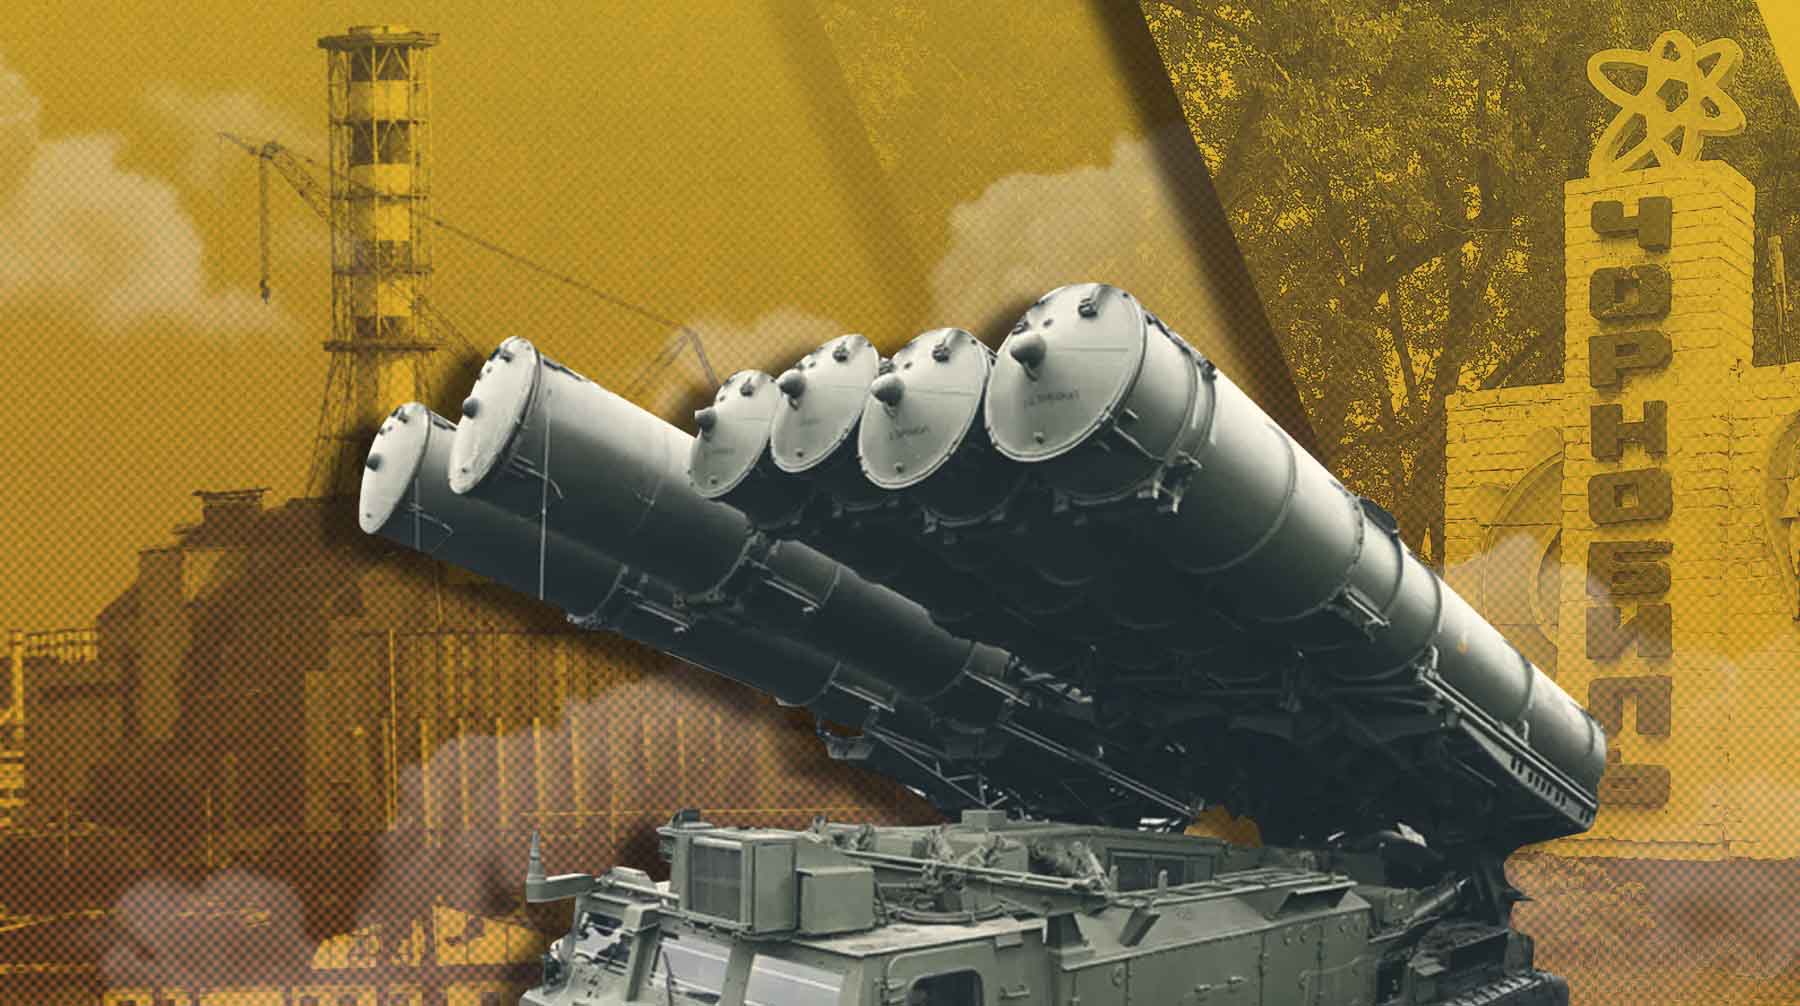 Руководитель строительства саркофага на ЧАЭС: Российские системы ПВО должны быть начеку, чтобы под Запорожьем не повторился Чернобыль